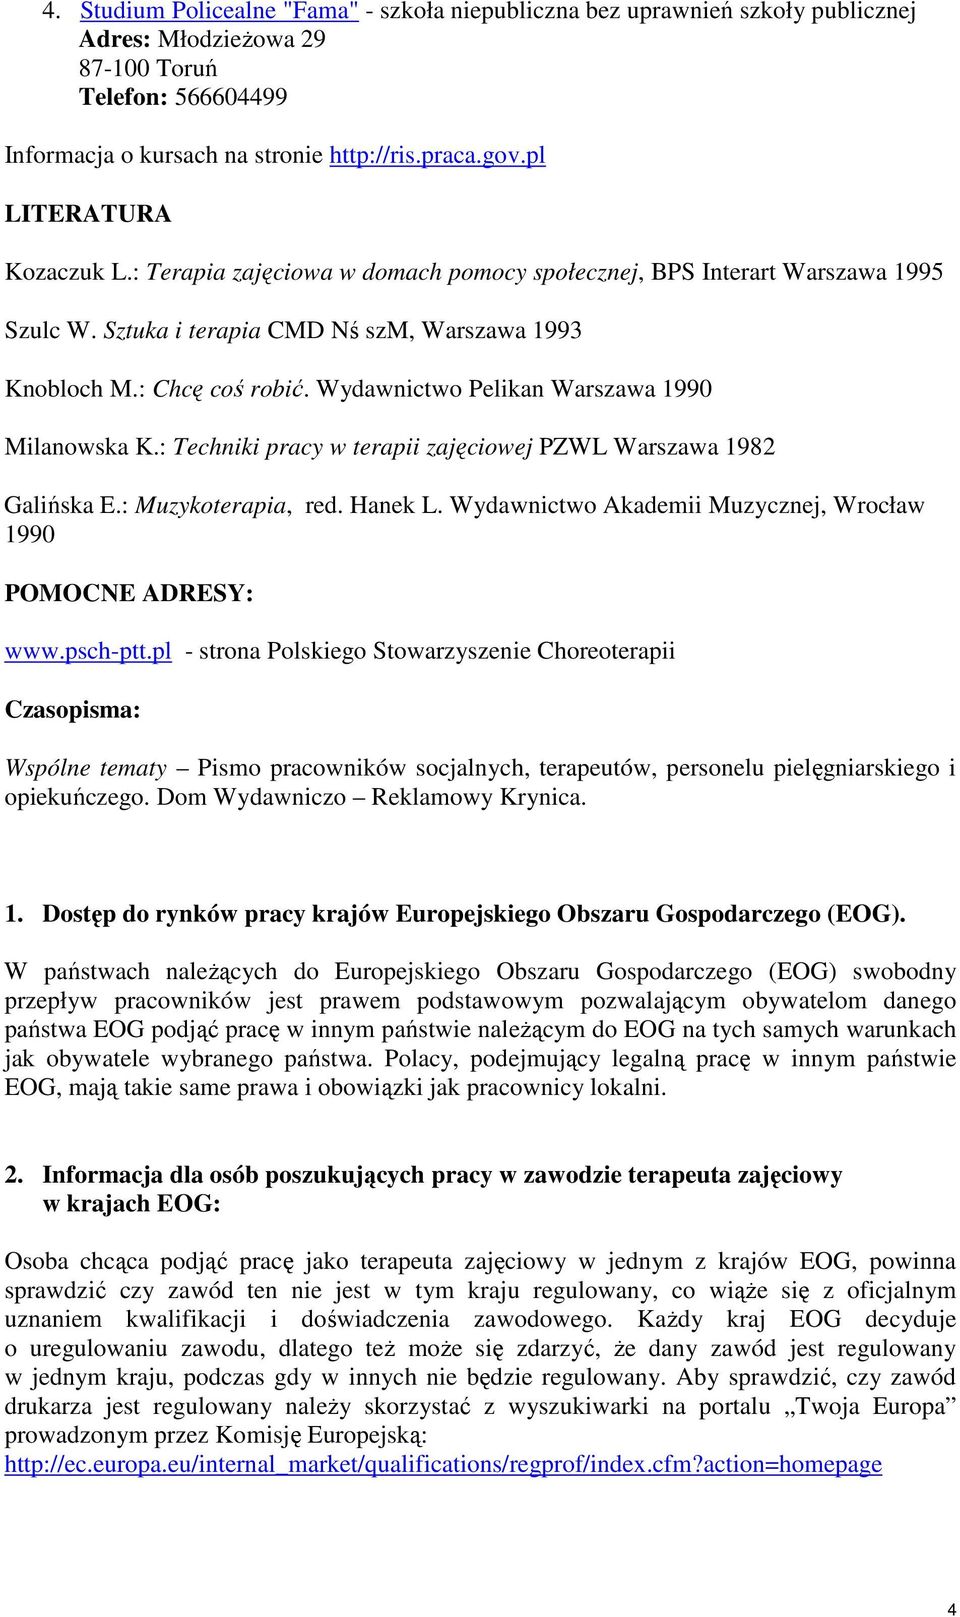 Wydawnictwo Pelikan Warszawa 1990 Milanowska K.: Techniki pracy w terapii zajęciowej PZWL Warszawa 1982 Galińska E.: Muzykoterapia, red. Hanek L.